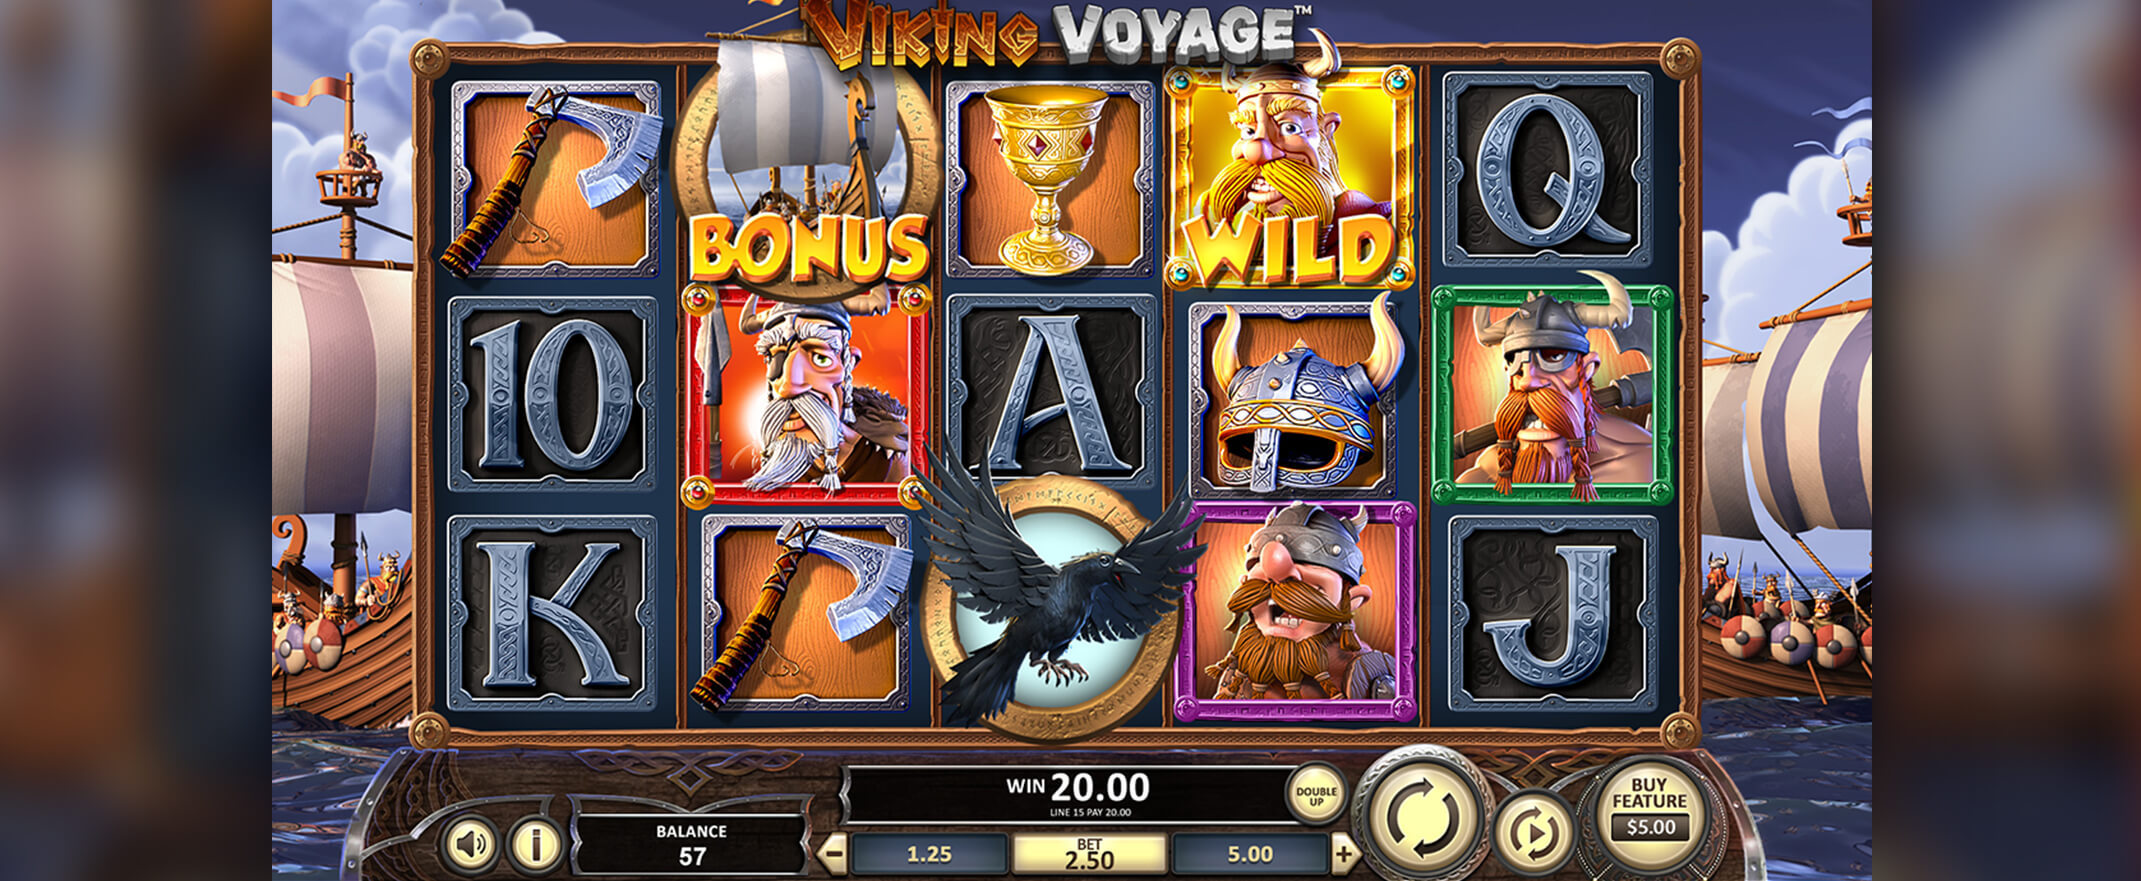 Viking Voyage ein neues Spielautomat von Betsoft